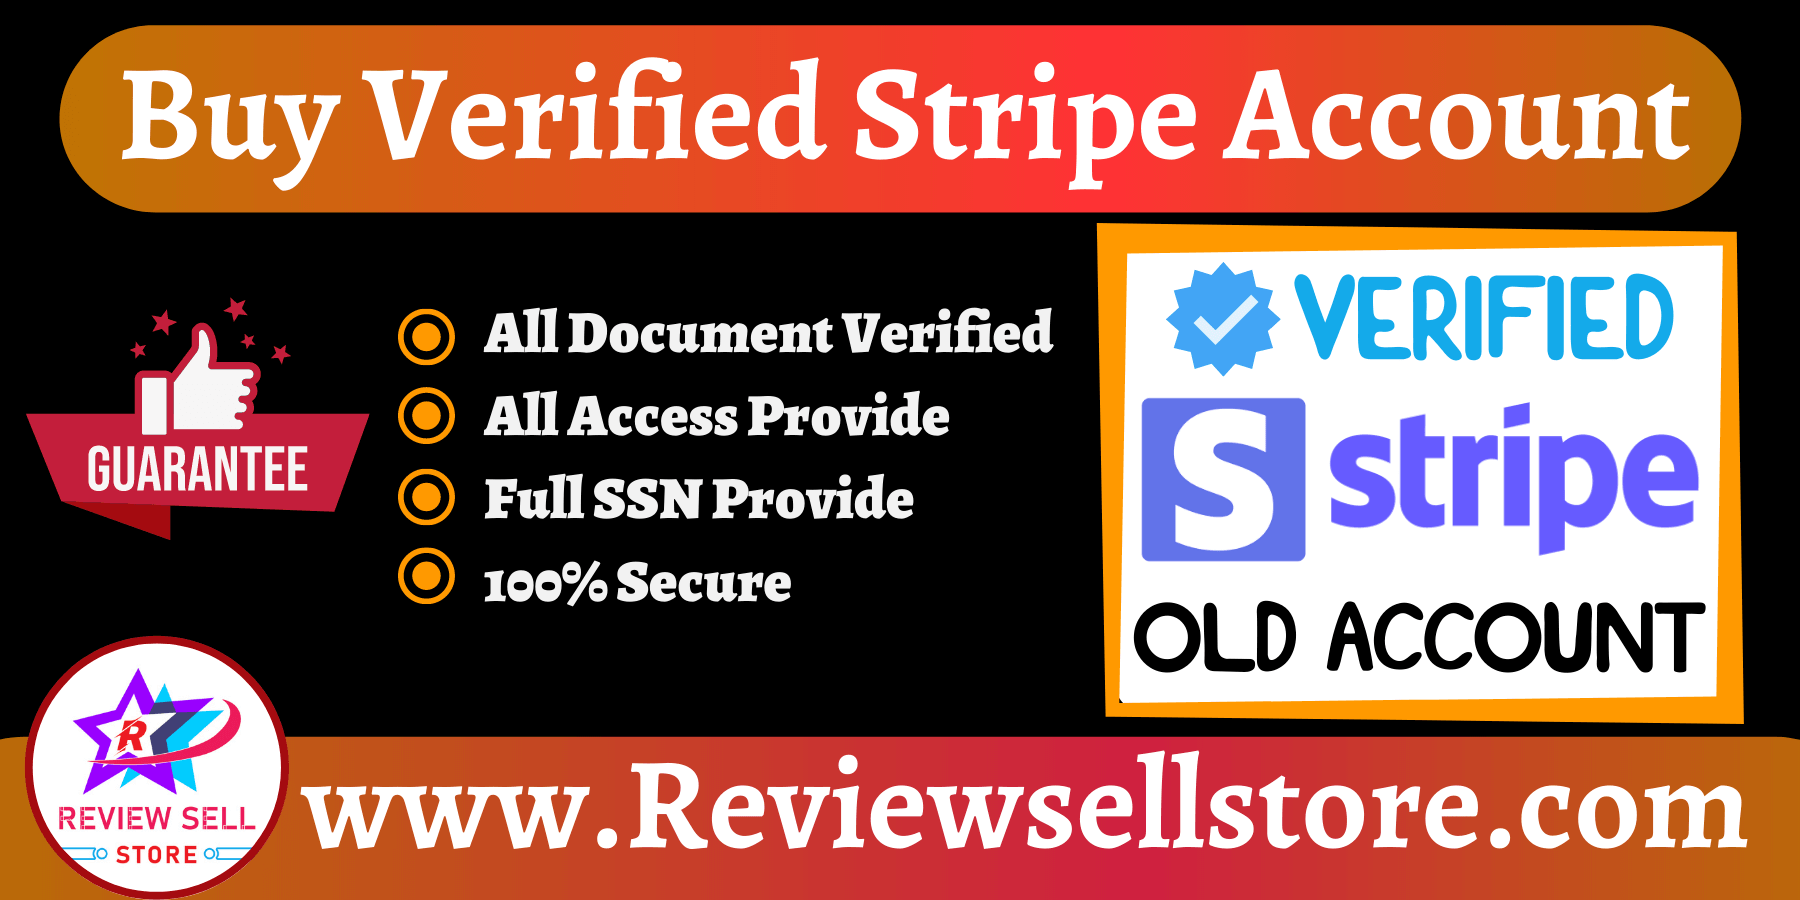 Buy Verified Stripe Account Best Quality - 100% Verified